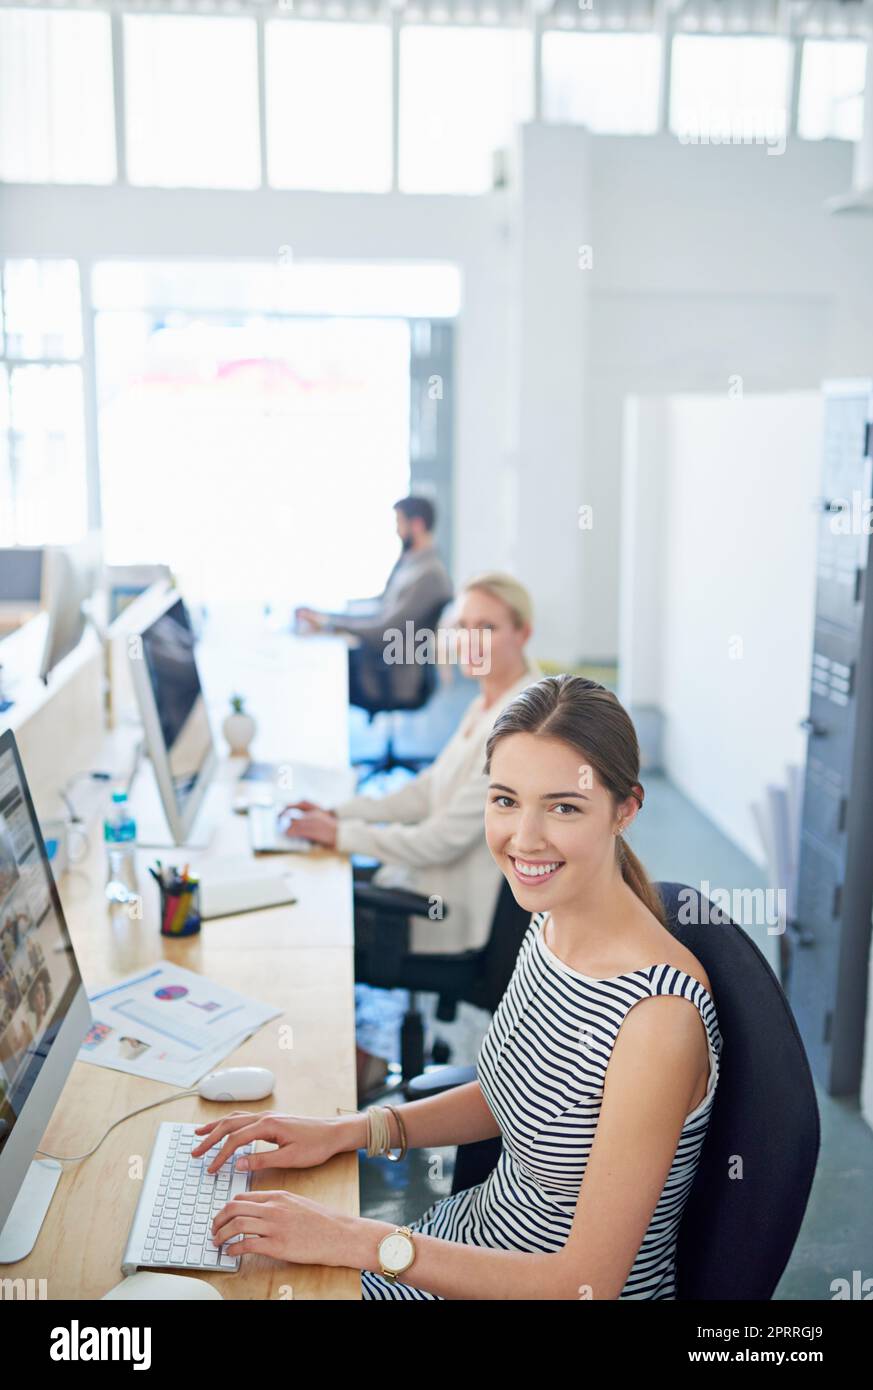 Partenaires sur le nouveau projet. Portrait d'une jeune employée de bureau assise à son poste de travail dans un bureau. Banque D'Images